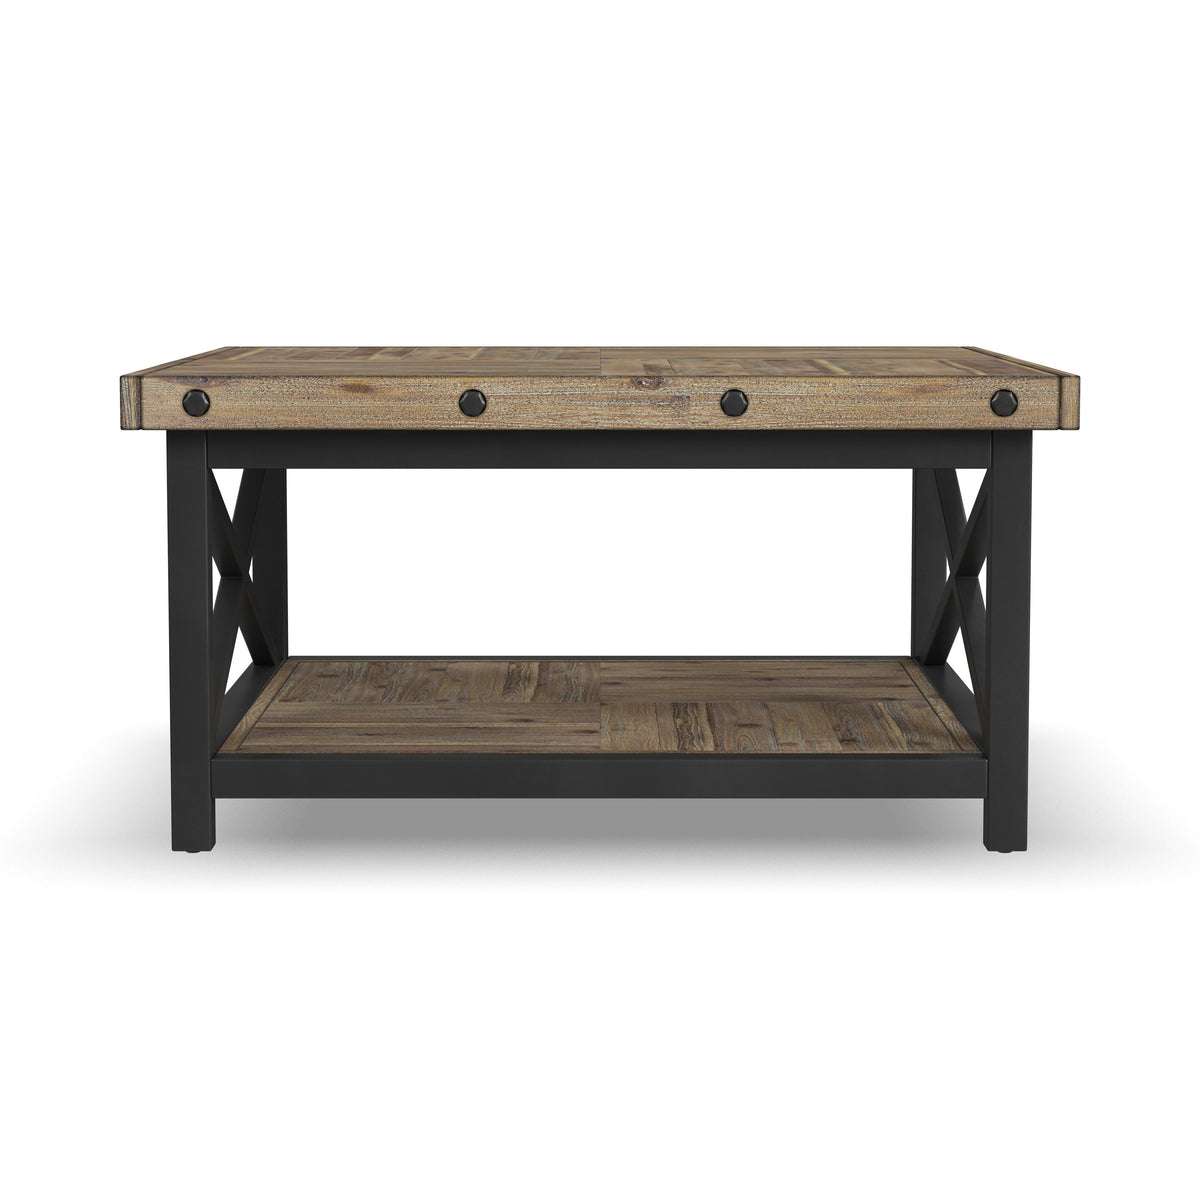 Carpenter 6723-032_Coffee Table, Square